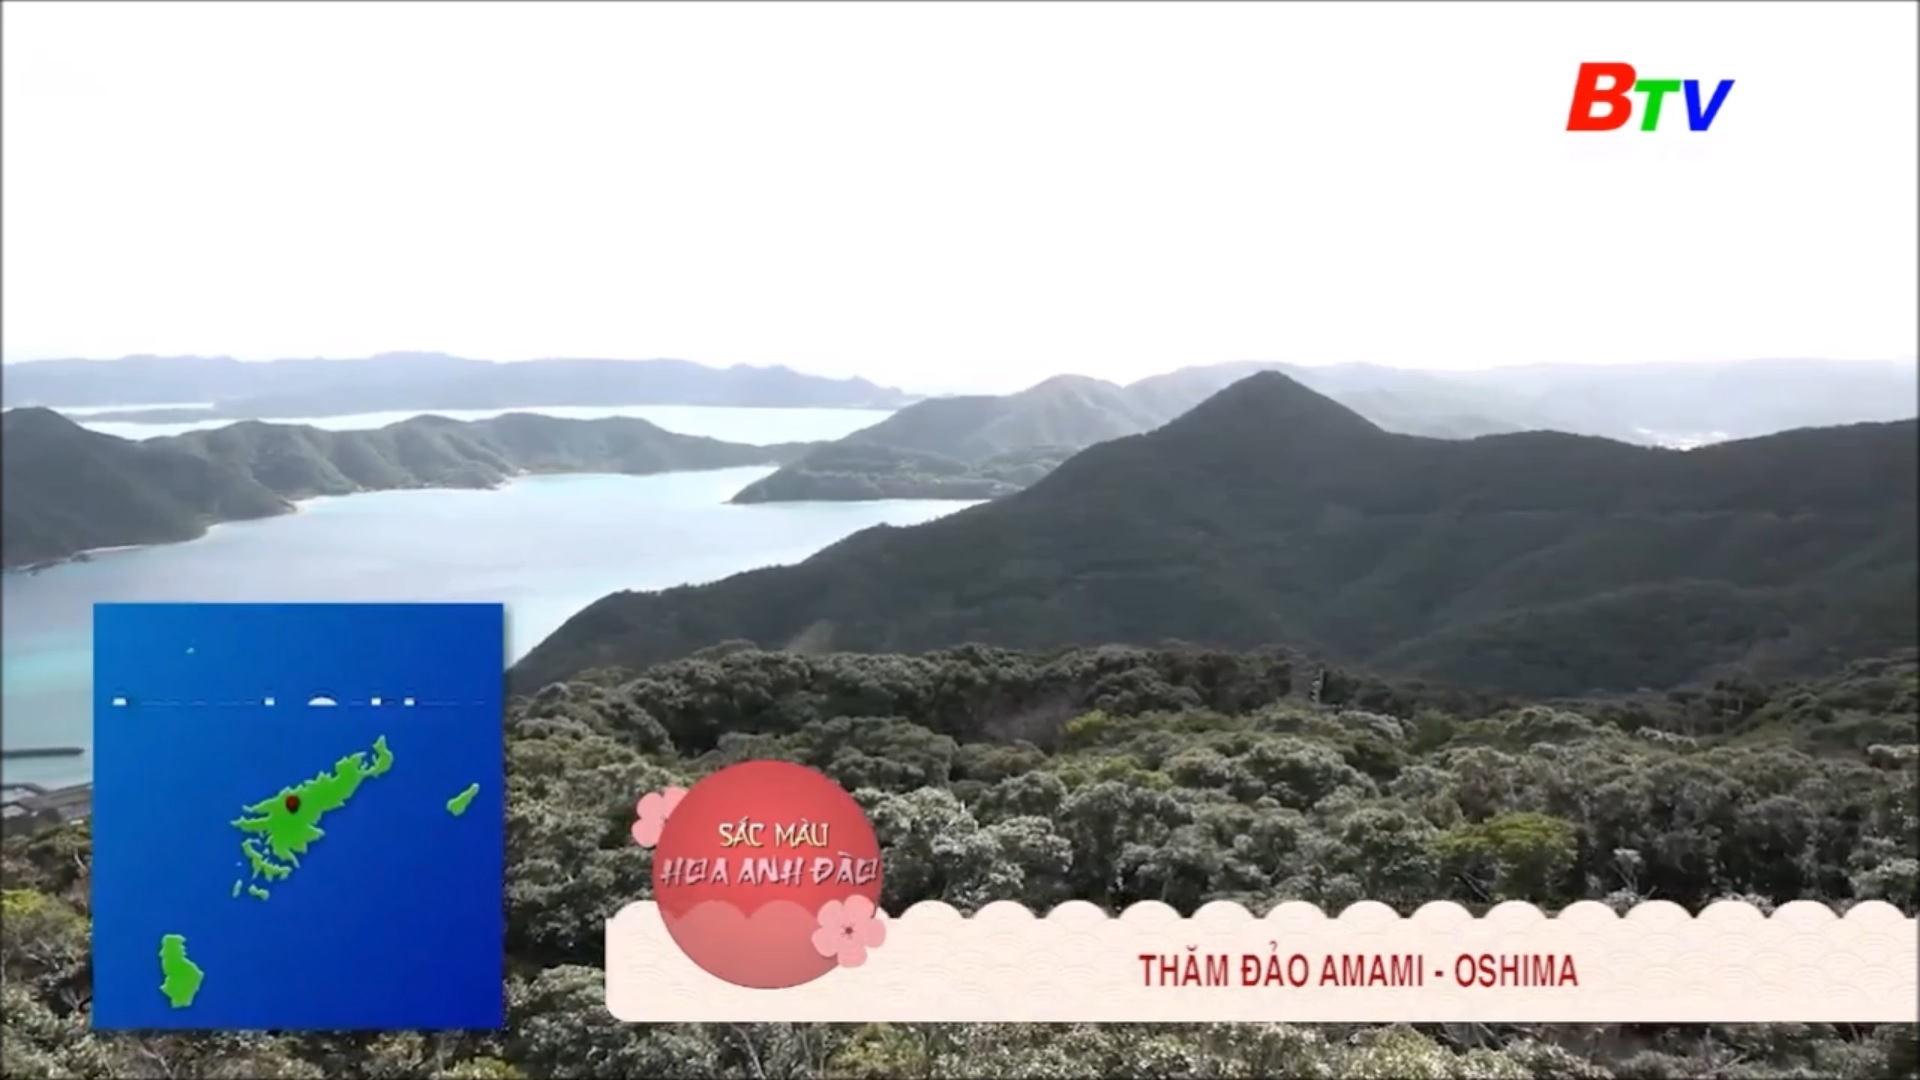 Thăm đảo Amami - Oshima